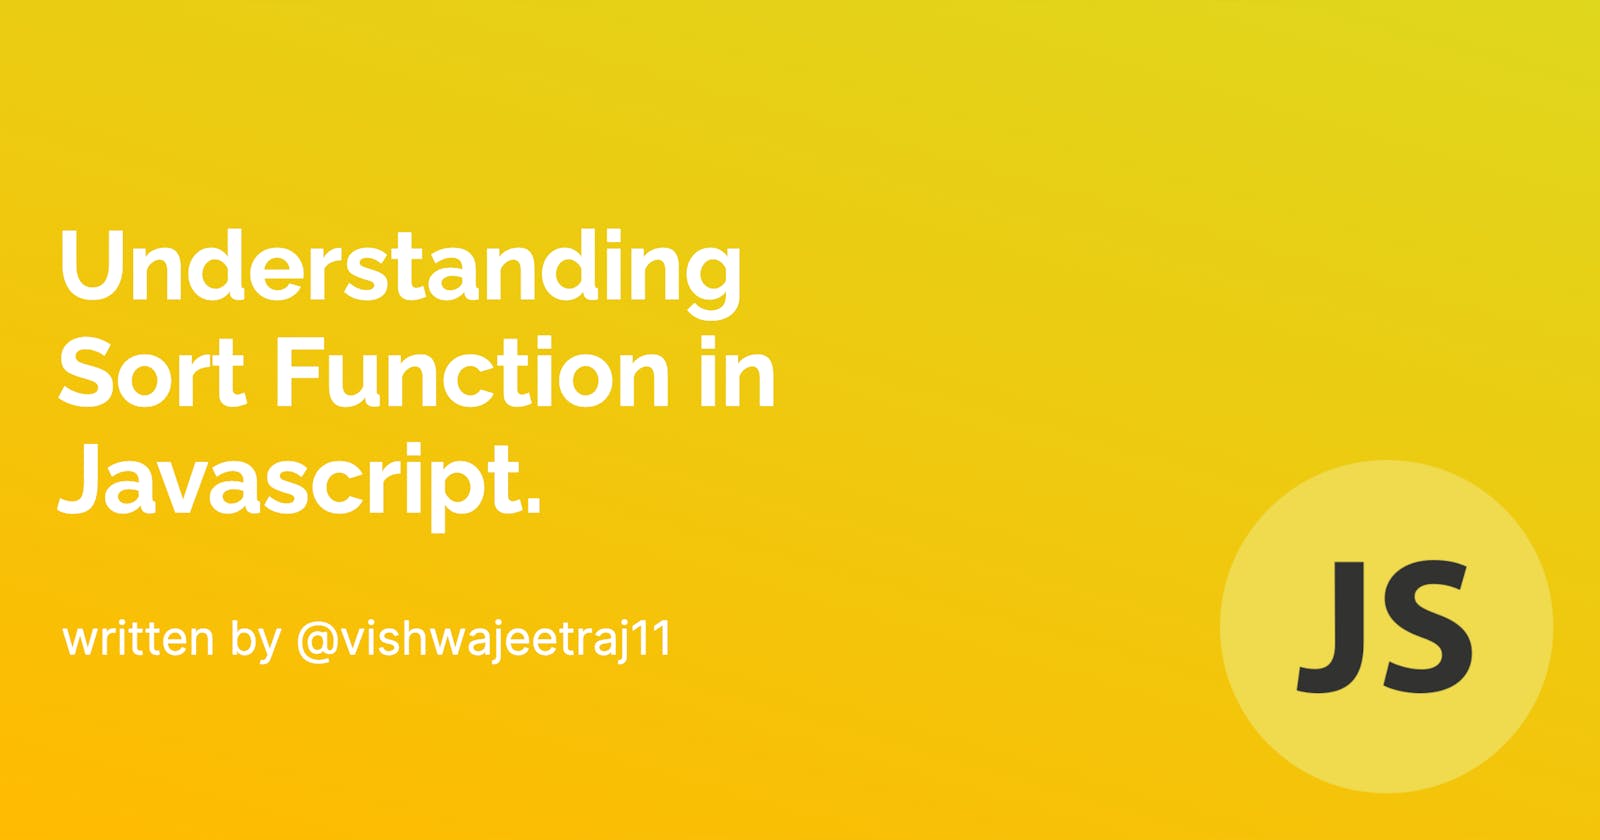 Understanding Sort Function in JavaScript.